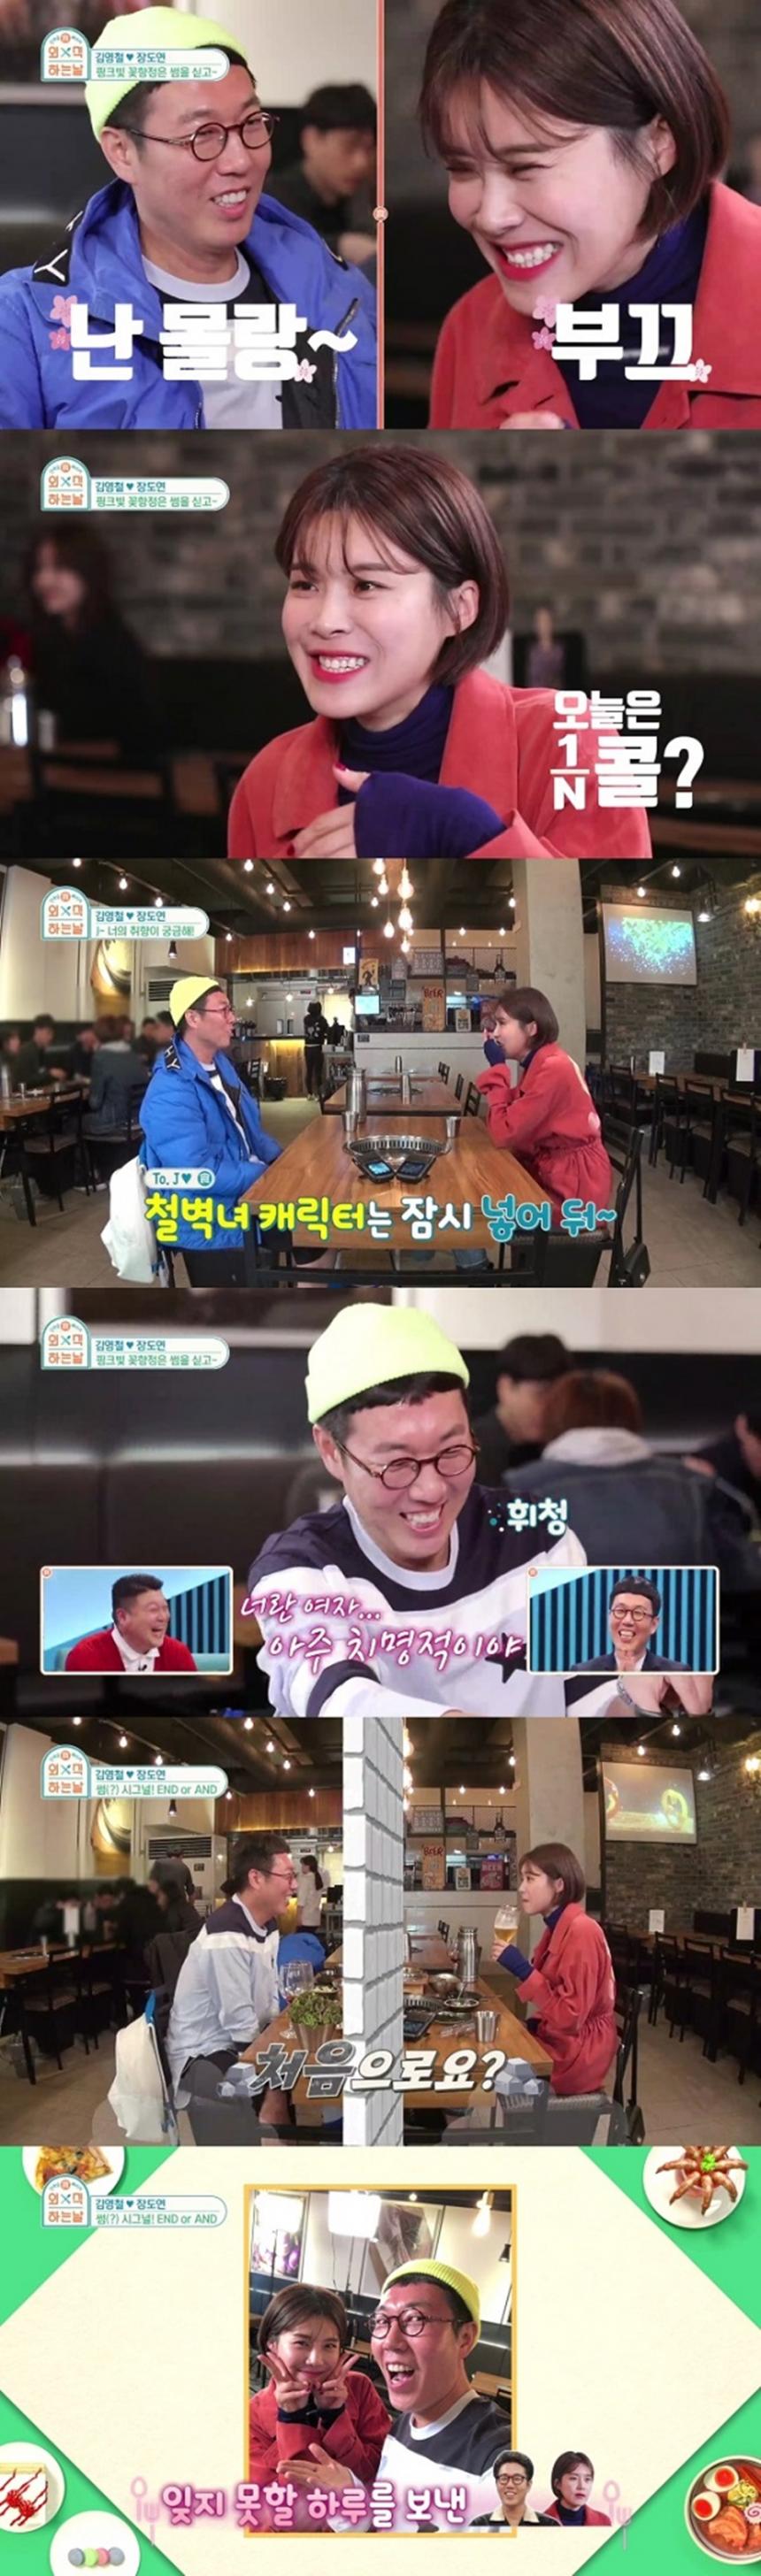 SBS ‘외식하는 날’ 방송캡쳐